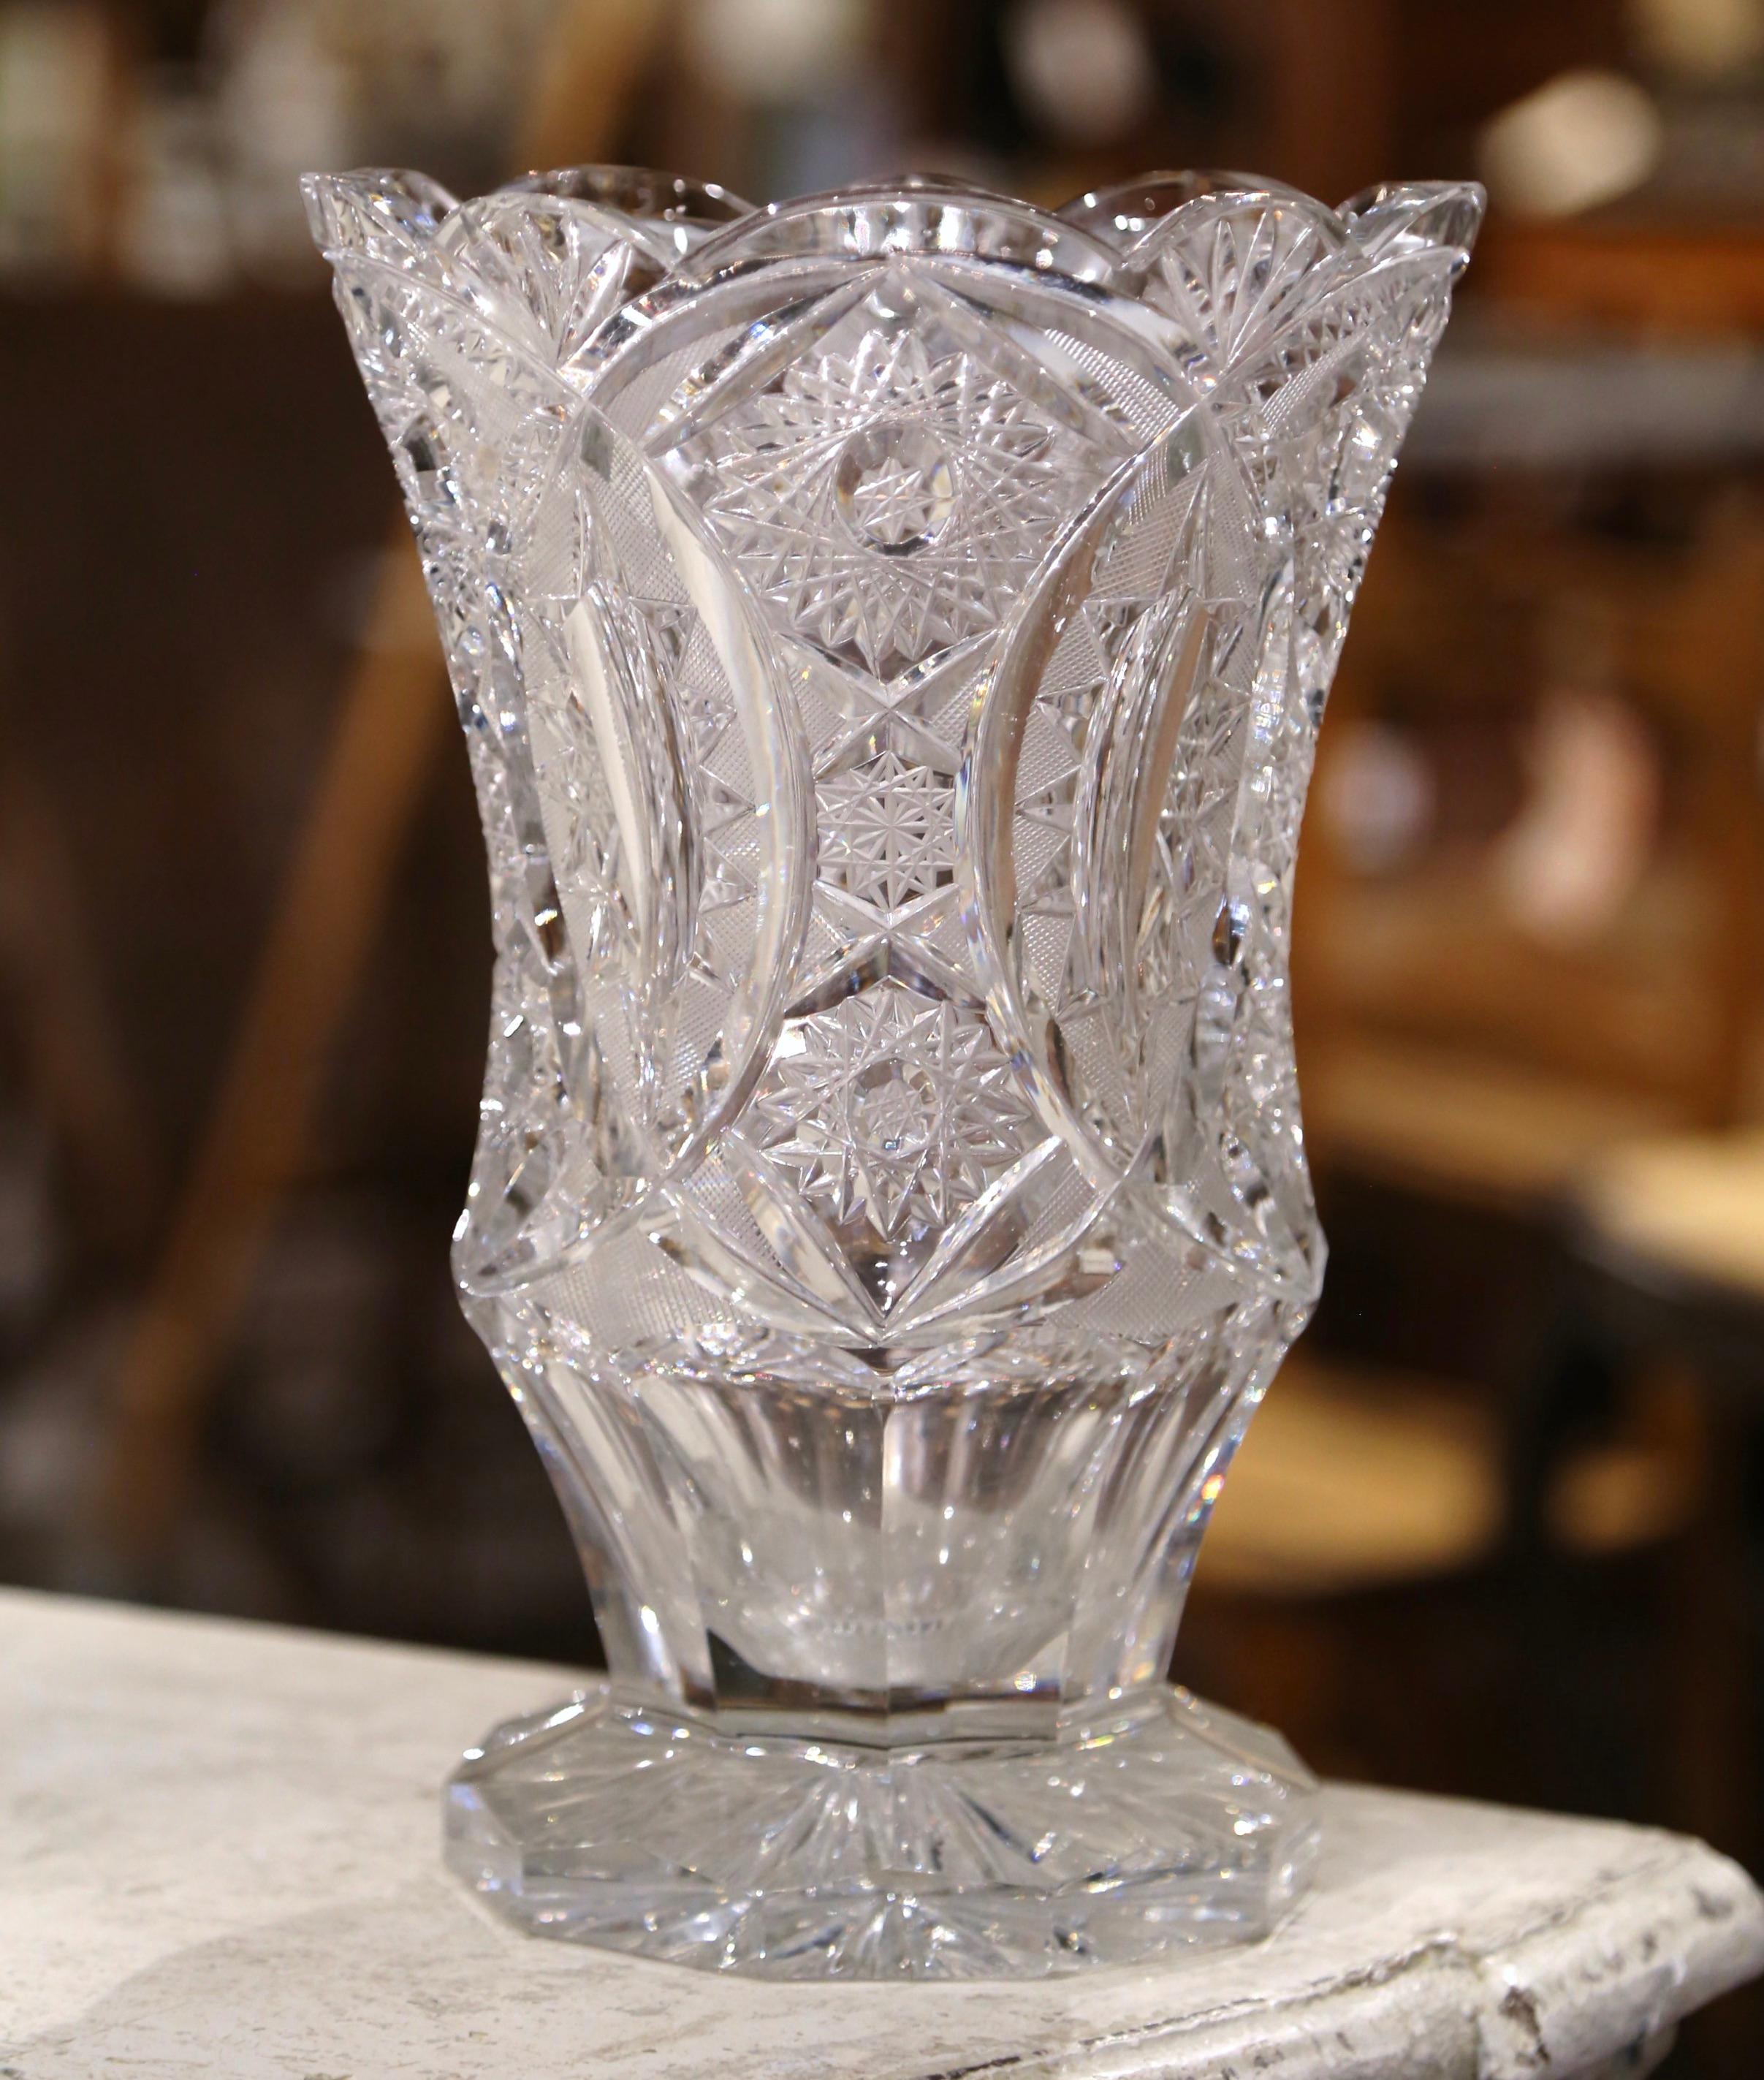 Décorez une table d'appoint ou une enfilade avec cet élégant vase antique. Fabriqué en France vers 1960, ce grand vase néoclassique repose sur une base octogonale et est agrémenté d'une large ouverture au sommet. Le vase classique en cristal taillé